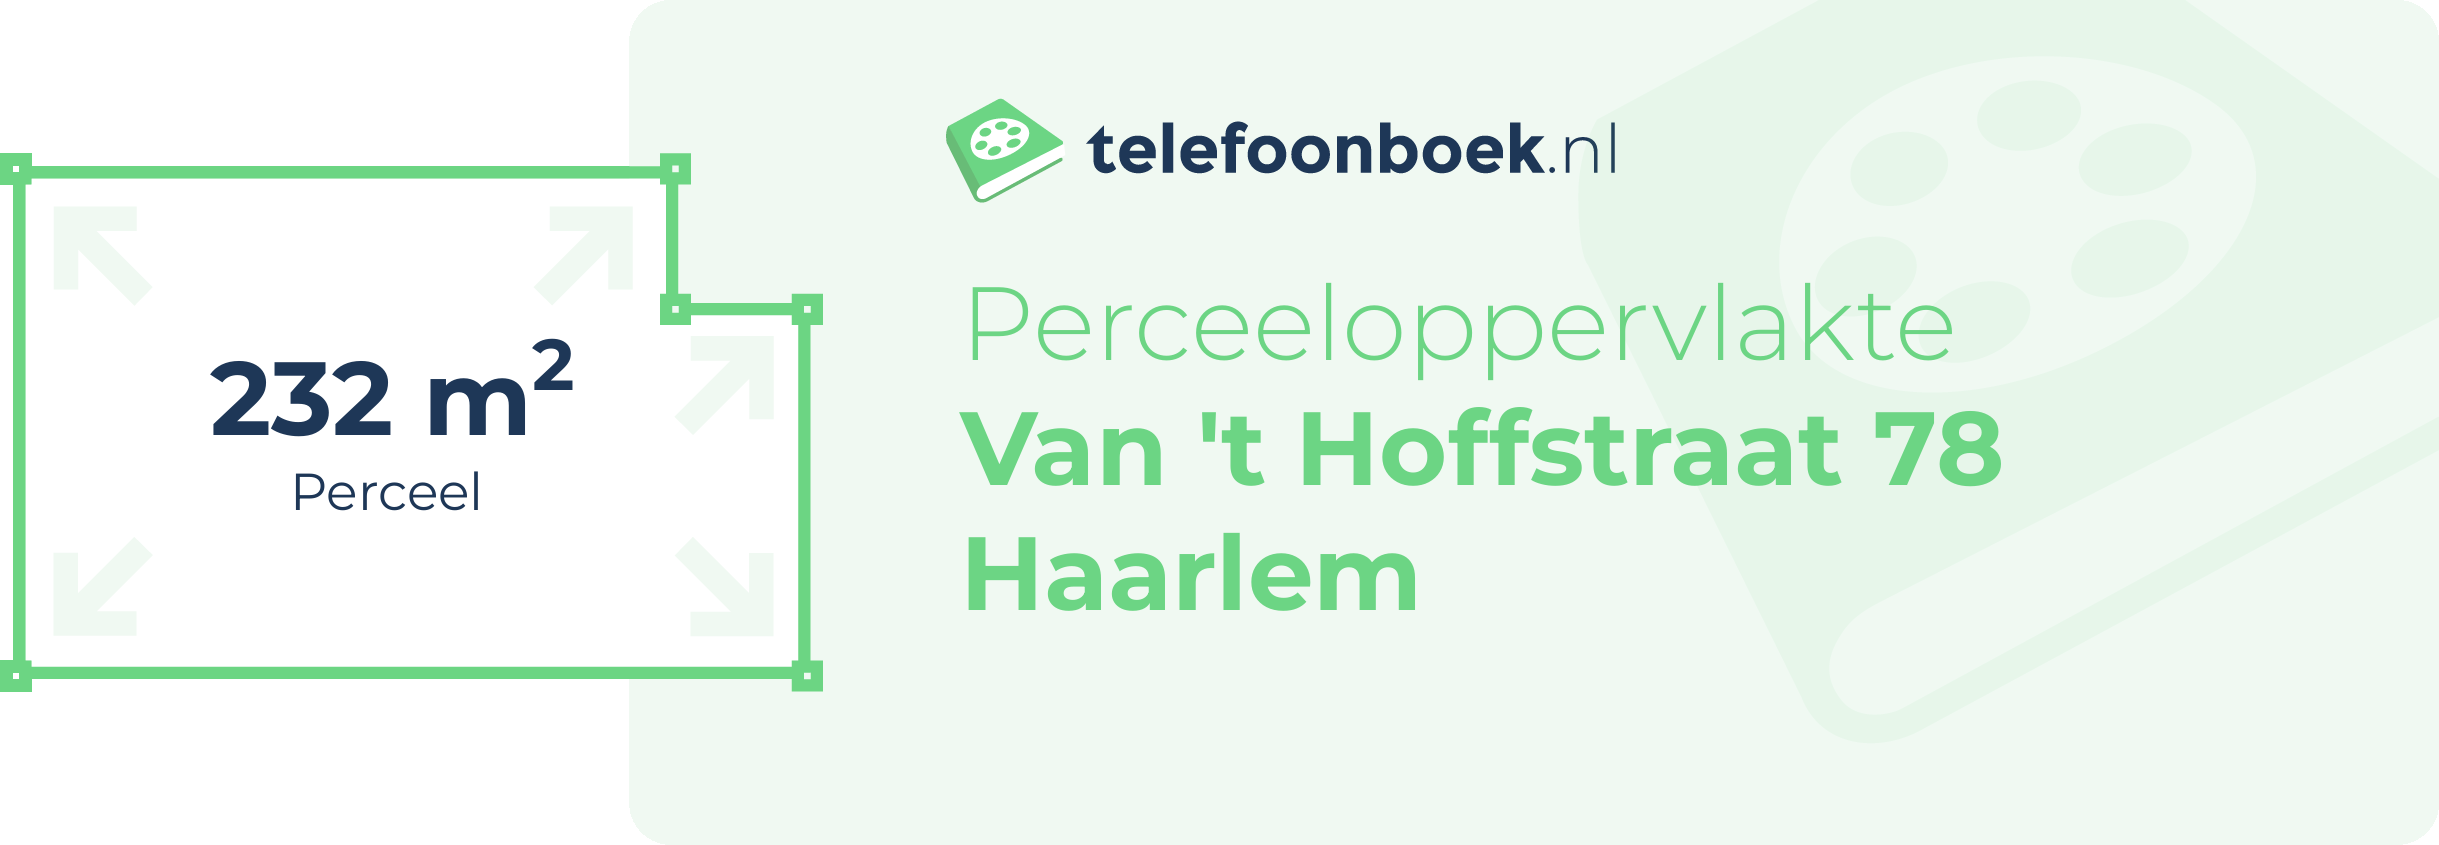 Perceeloppervlakte Van 't Hoffstraat 78 Haarlem